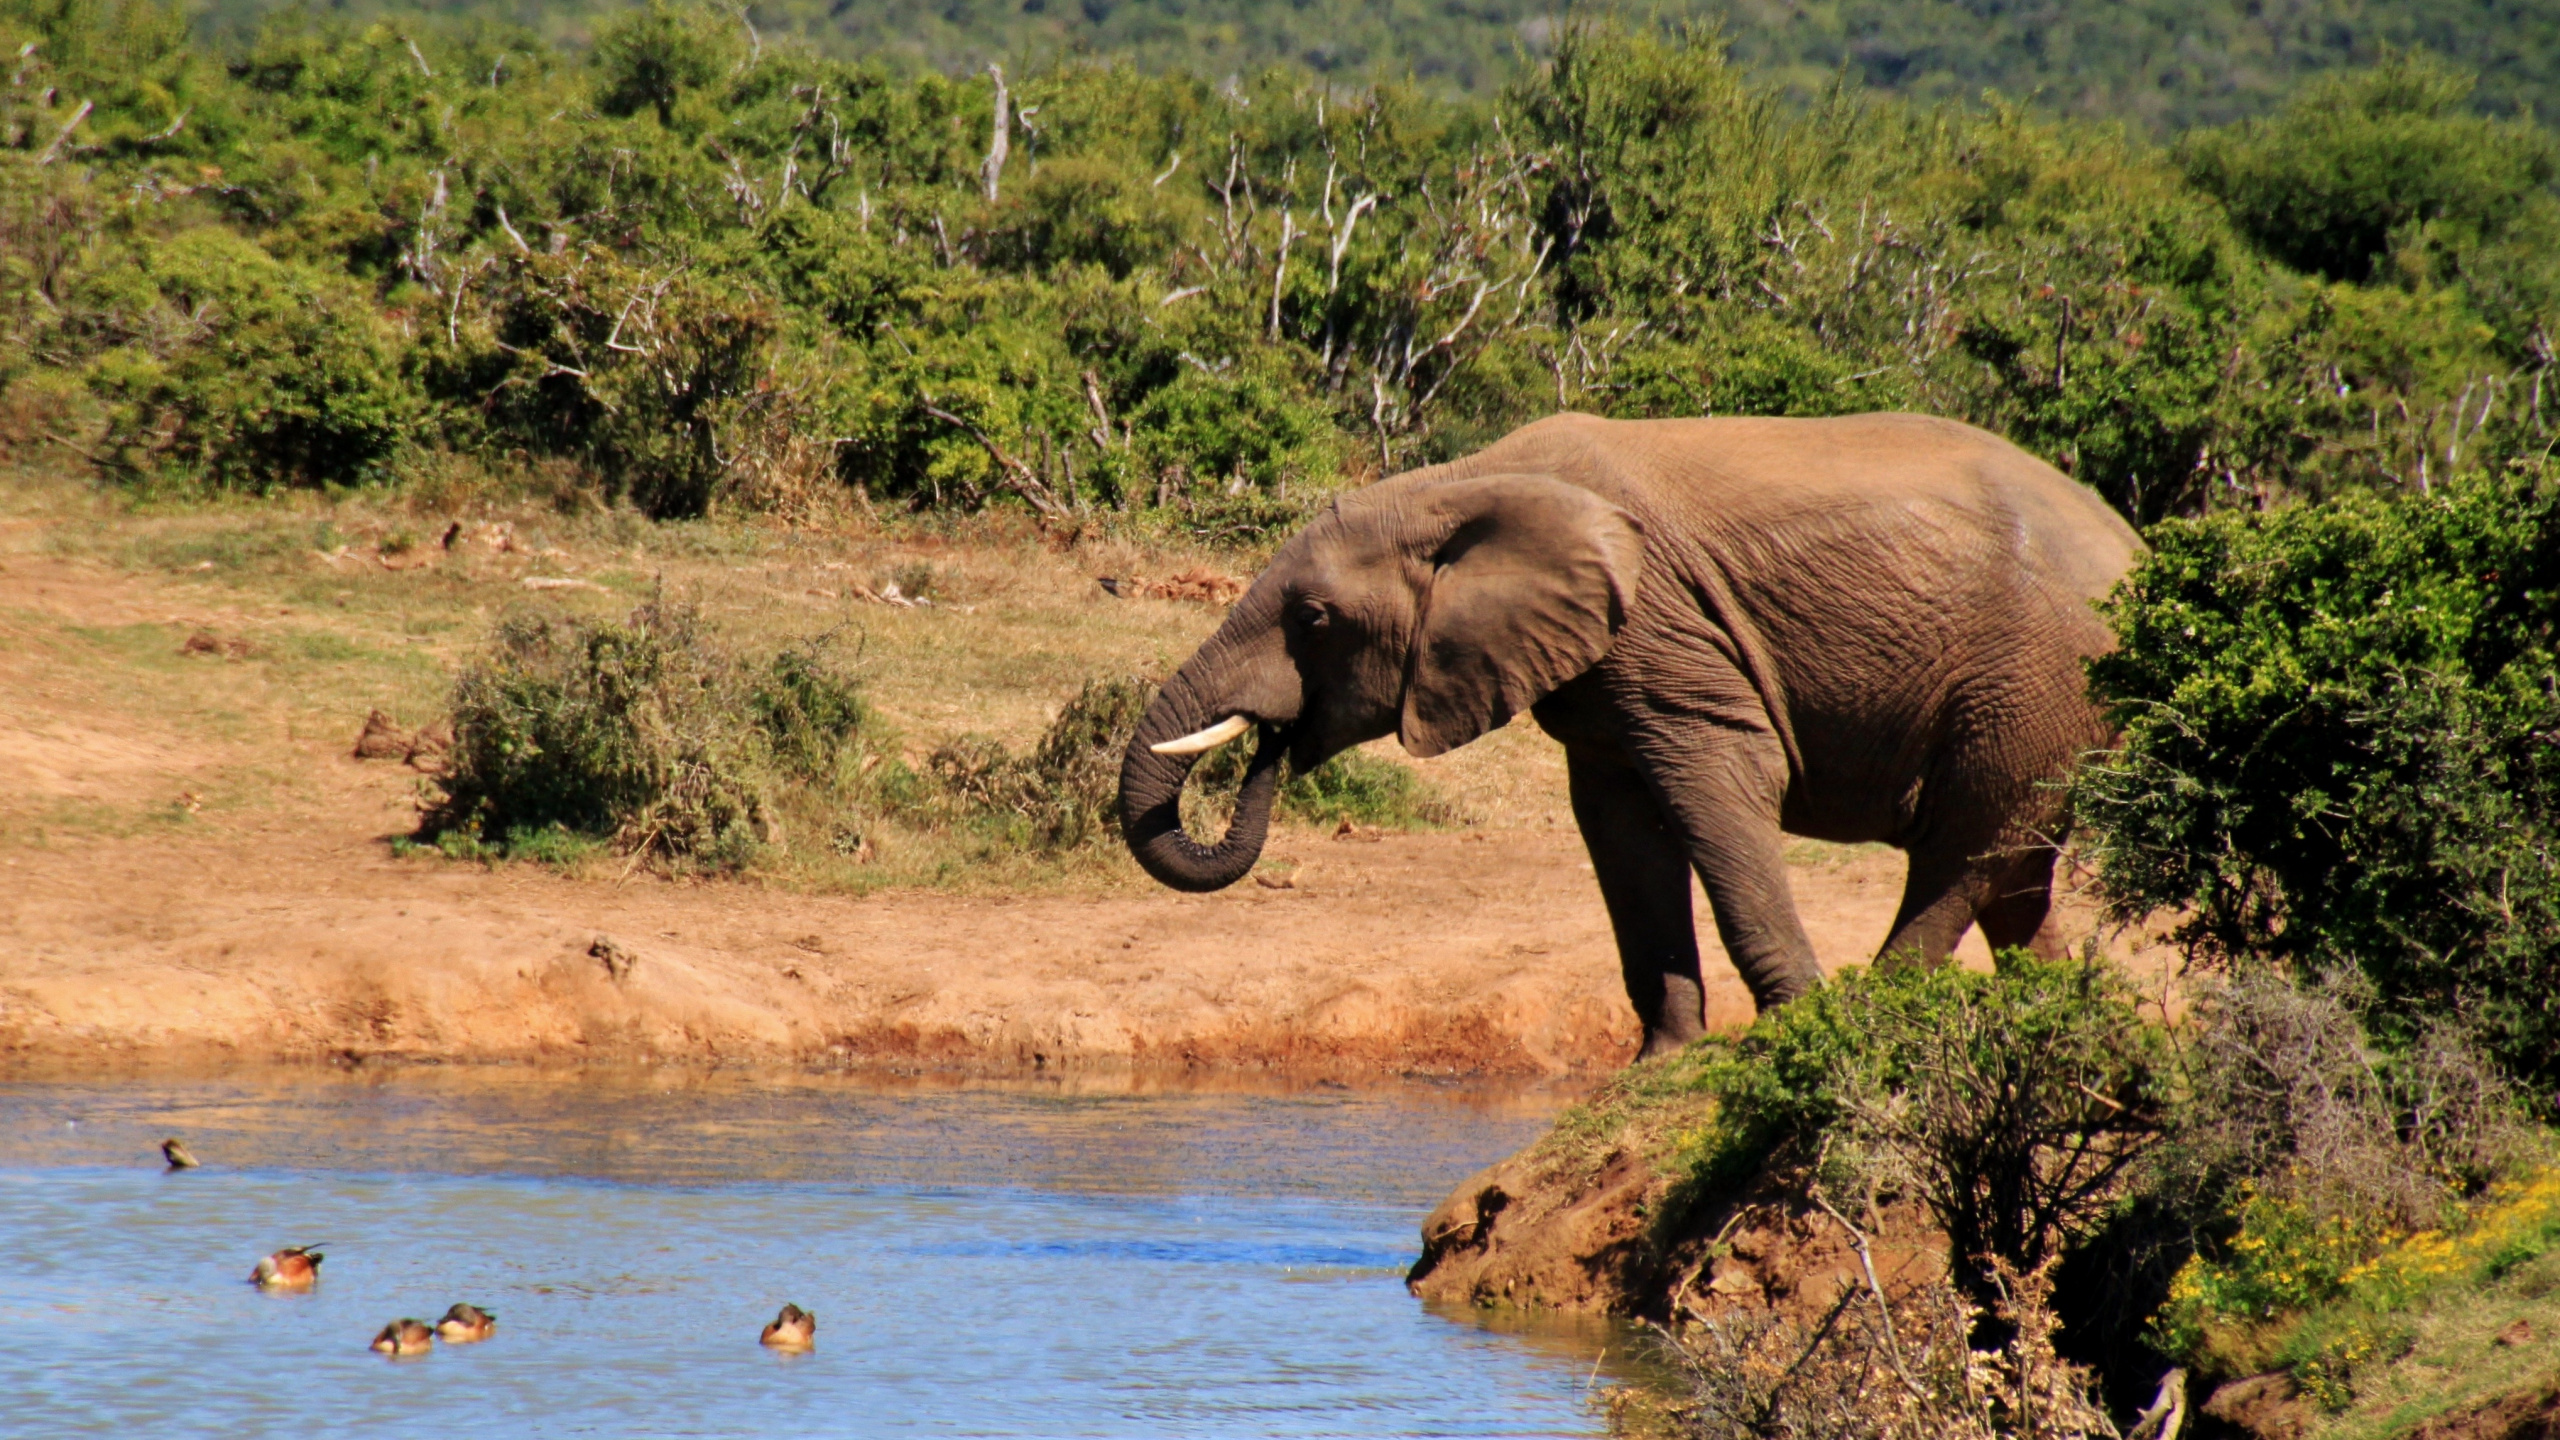 野生动物, 大象和猛犸象, 陆地动物, 非洲象, 印度大象 壁纸 2560x1440 允许